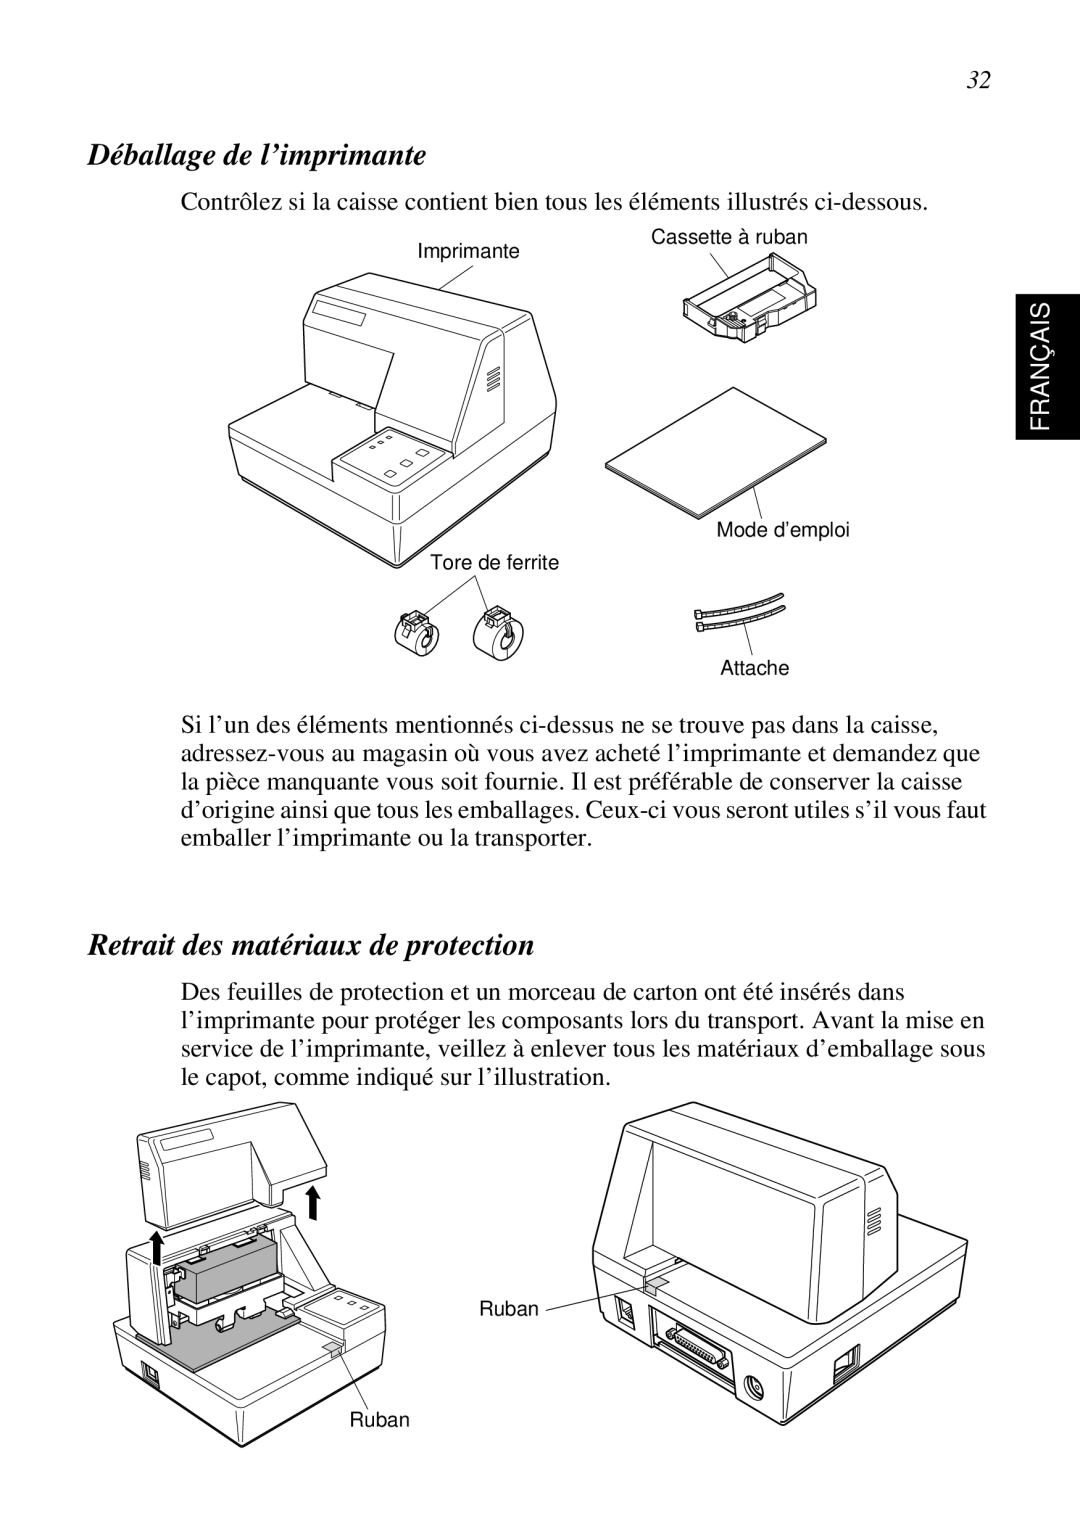 Star Micronics SP298 user manual Déballage de l’imprimante, Retrait des matériaux de protection, Français 